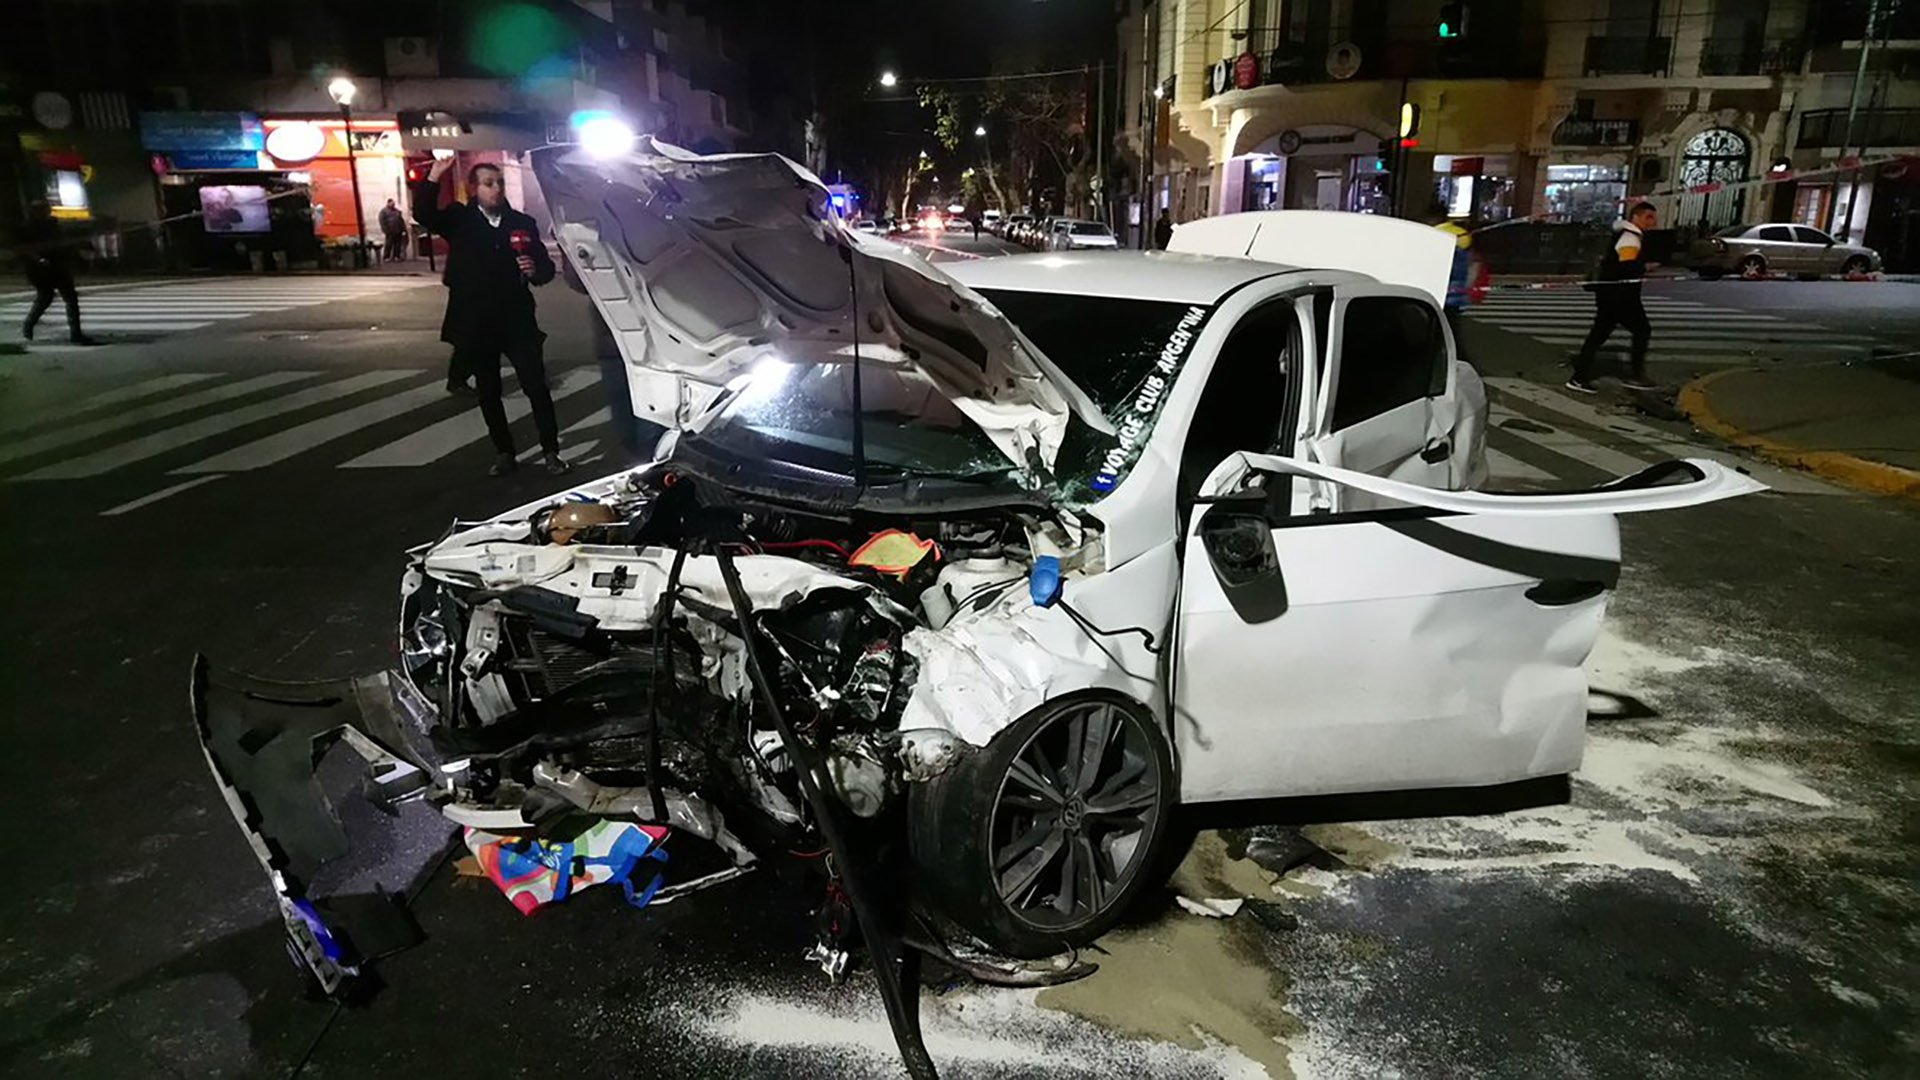 Choque múltiple en Almagro: cuatro autos involucrados y varios policías heridos - Infobae